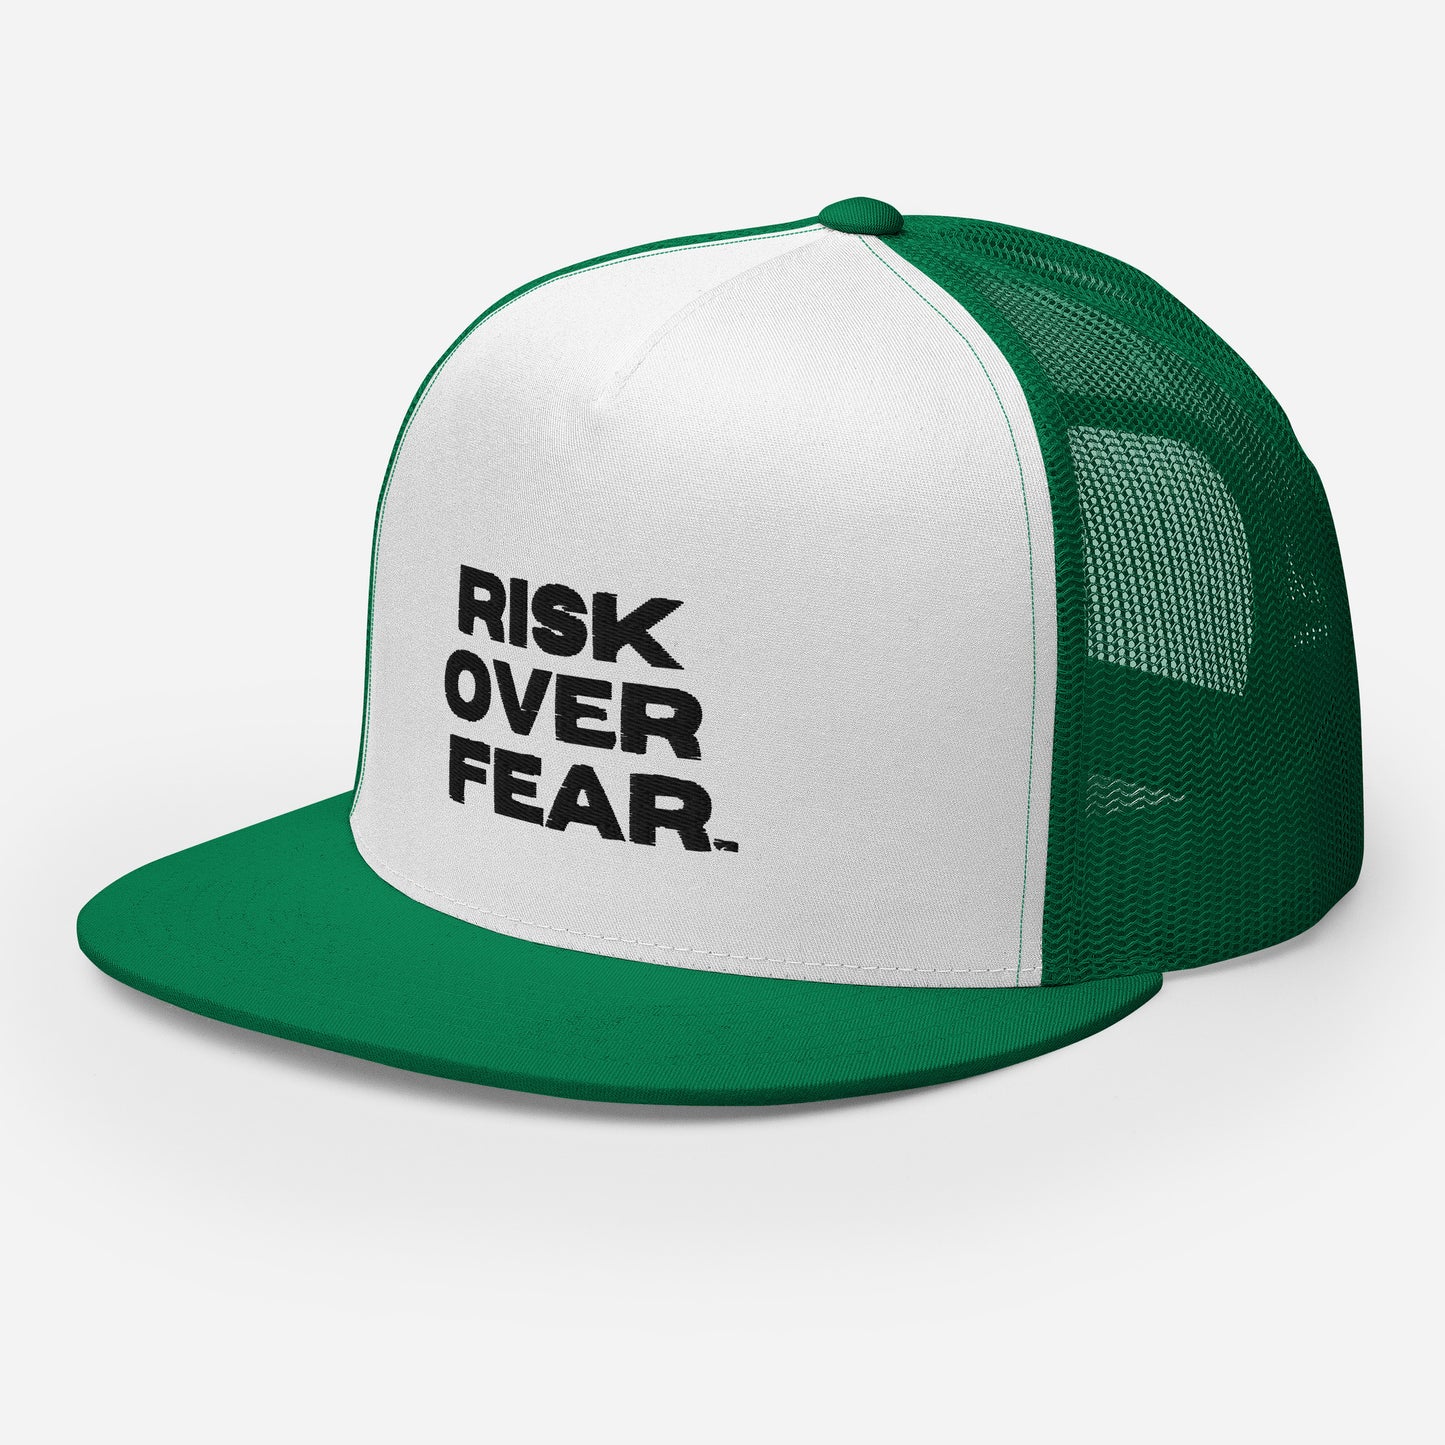 Risk Over Fear Trucker Cap